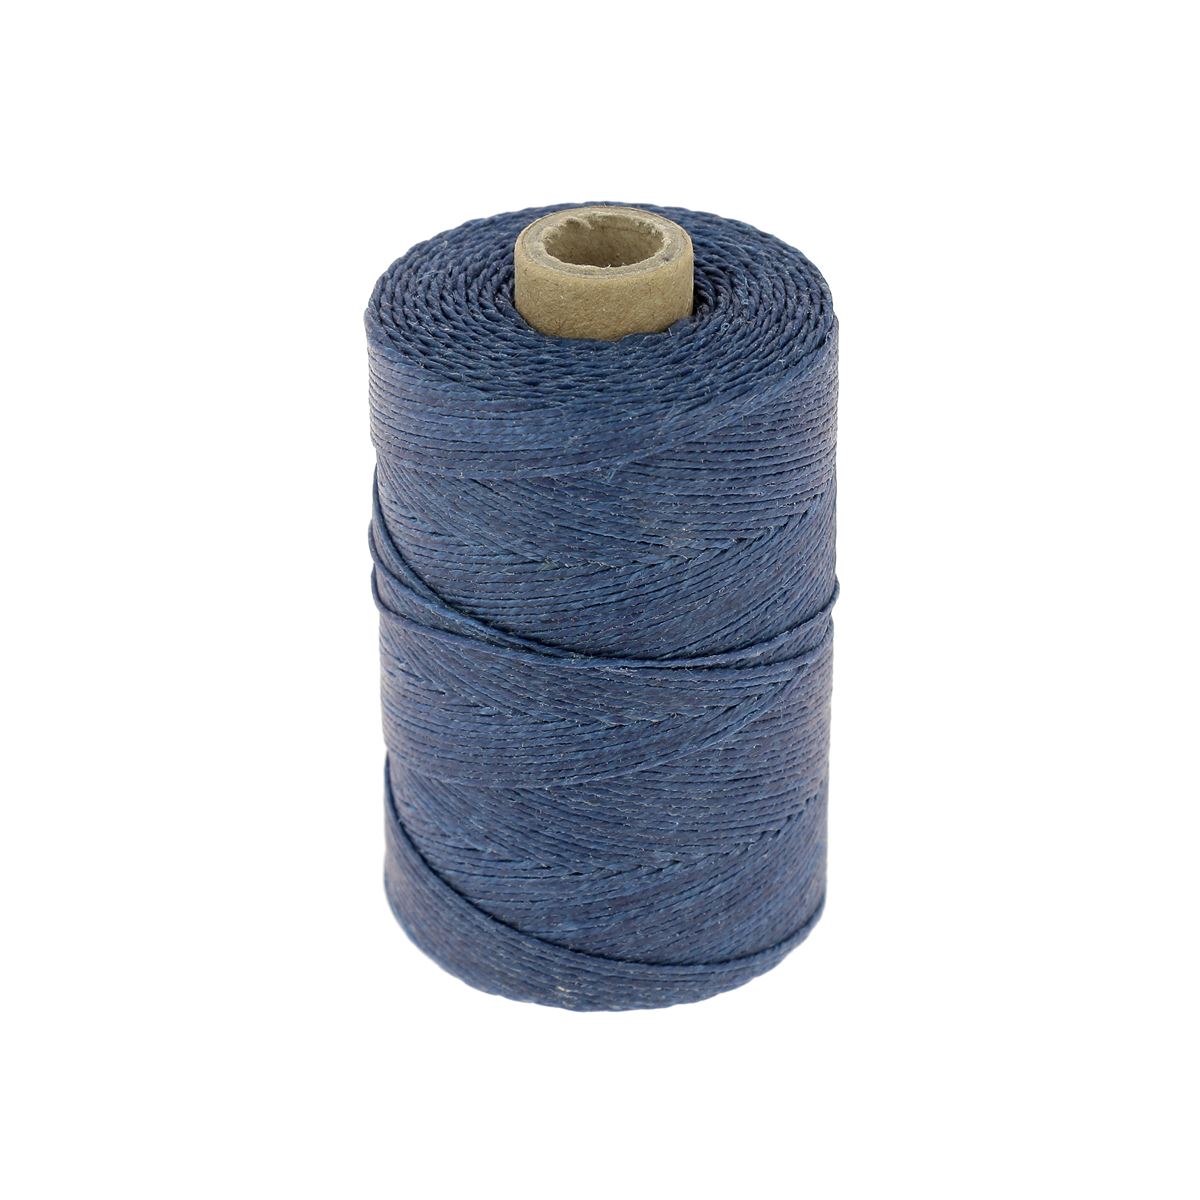 Bobine de fil polyester tressé poissé Noir x150m - Cuir en Stock